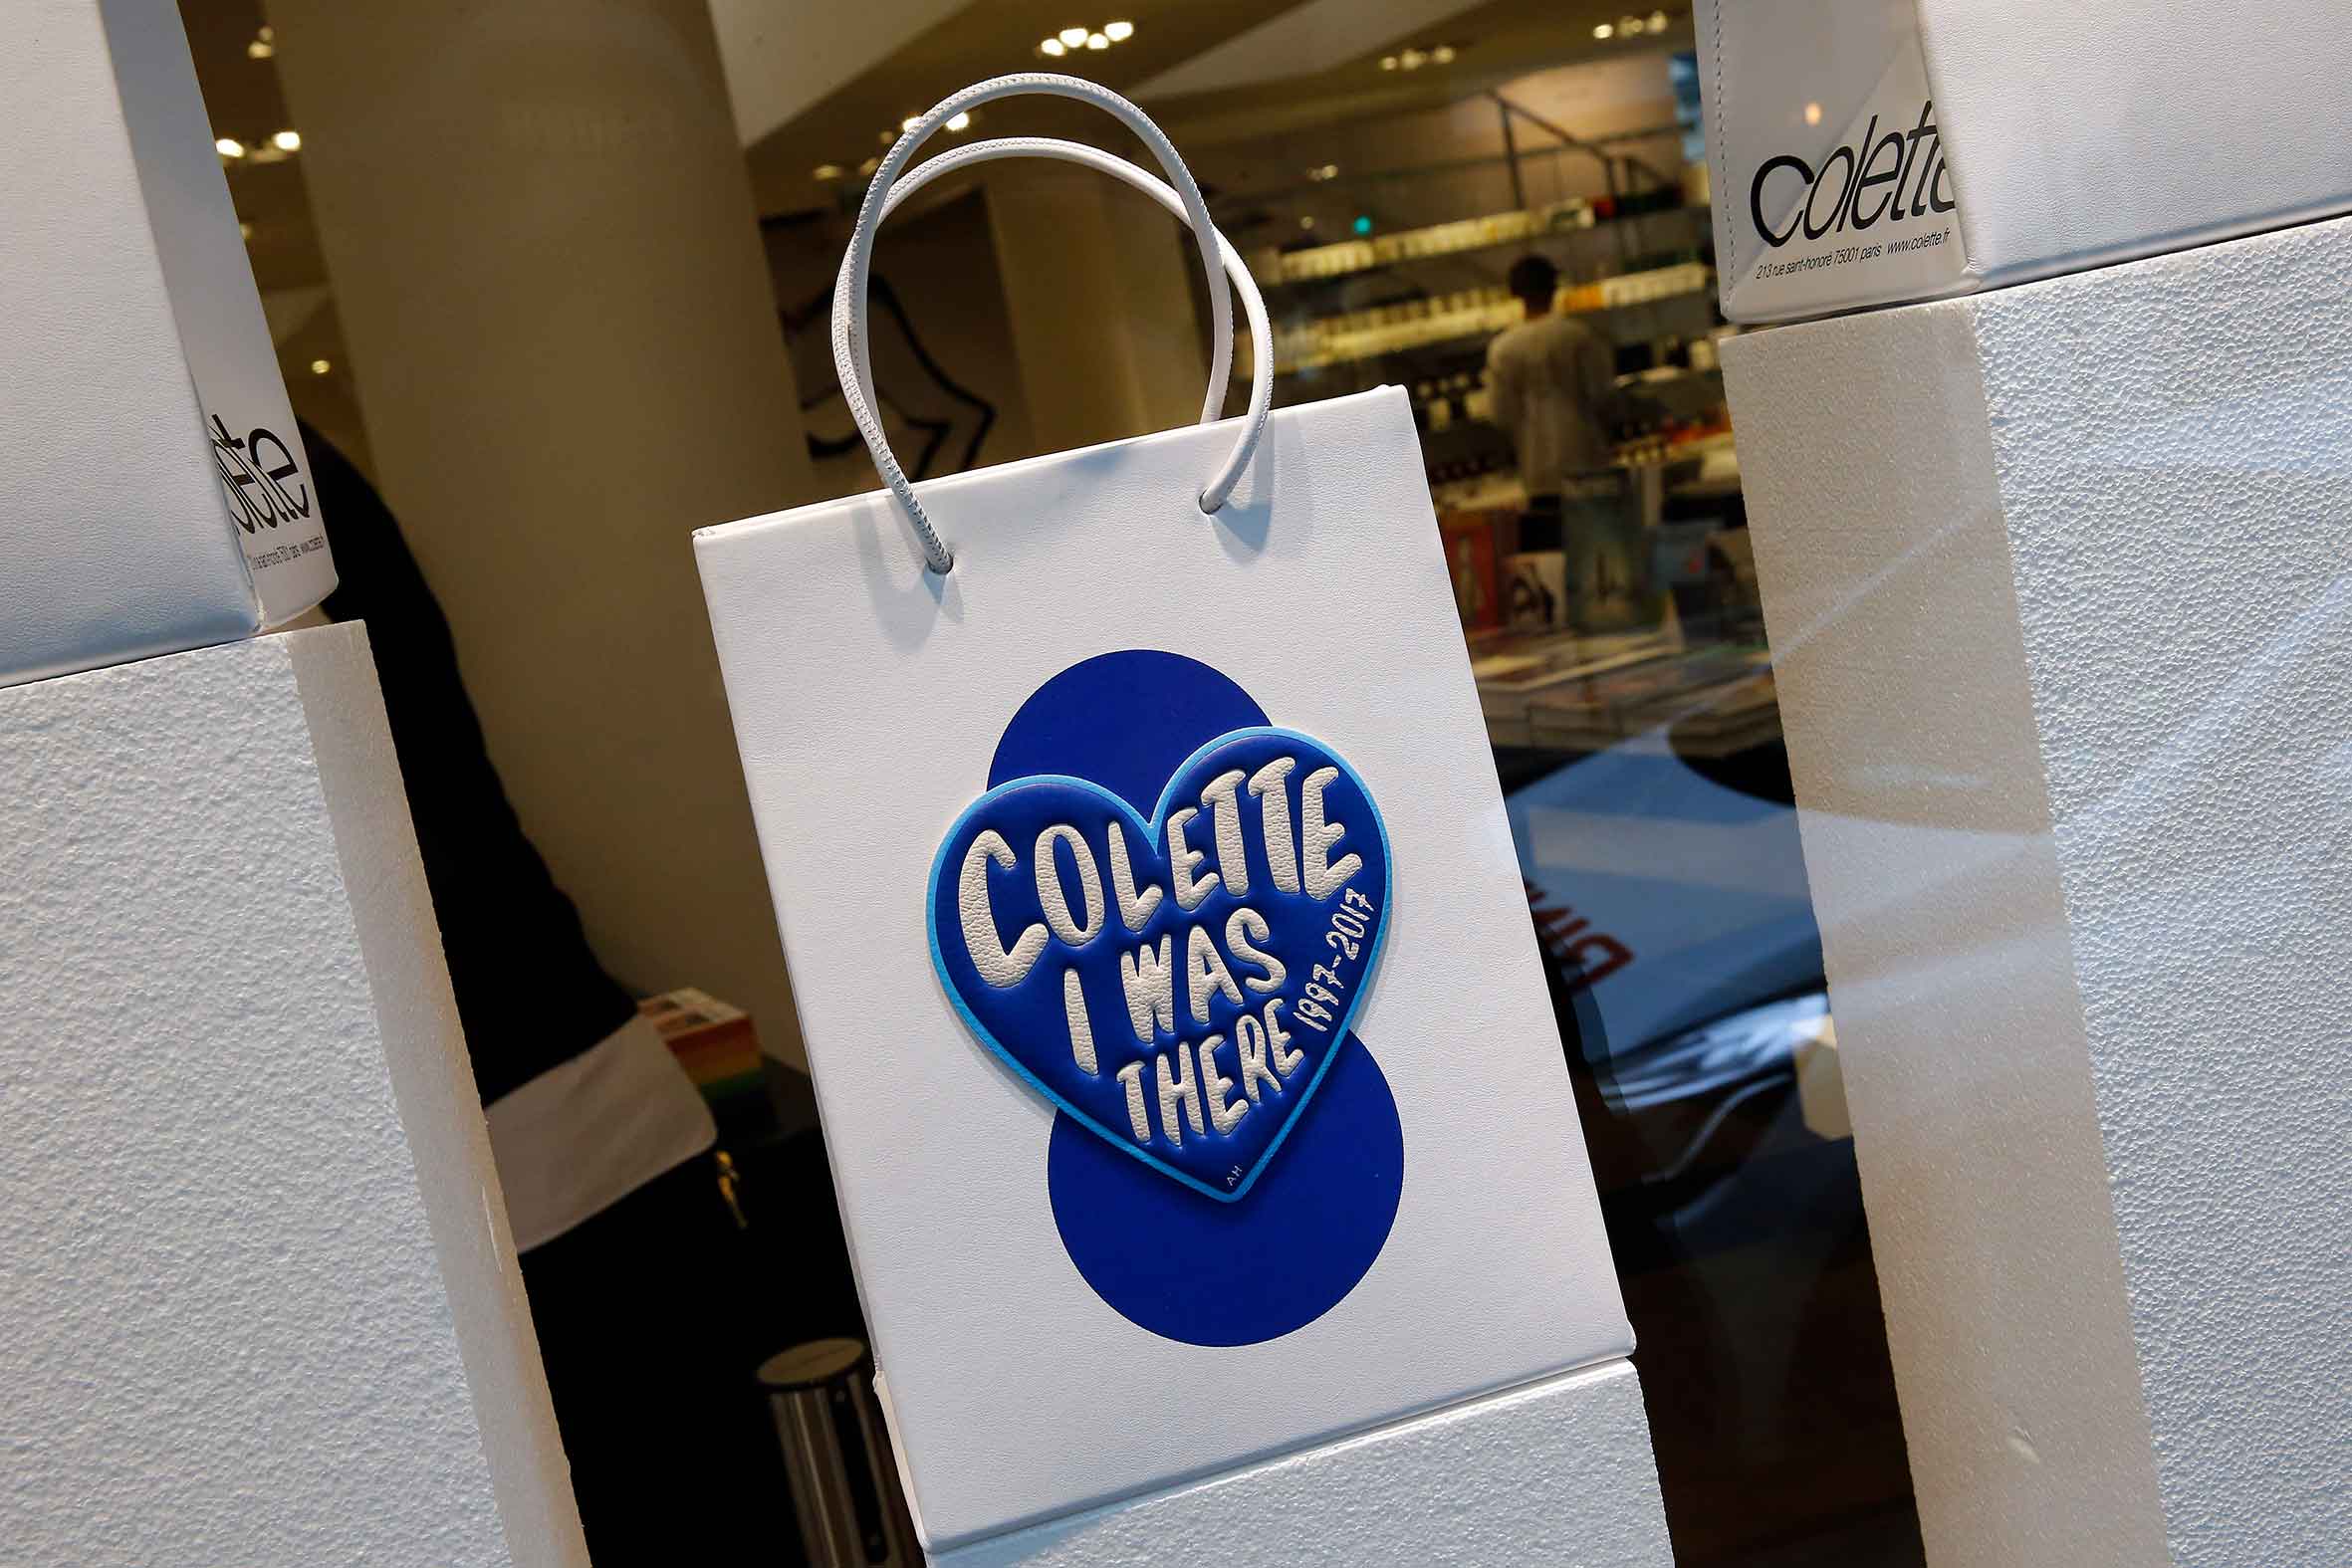 Habrá un documental sobre la icónica tienda Colette